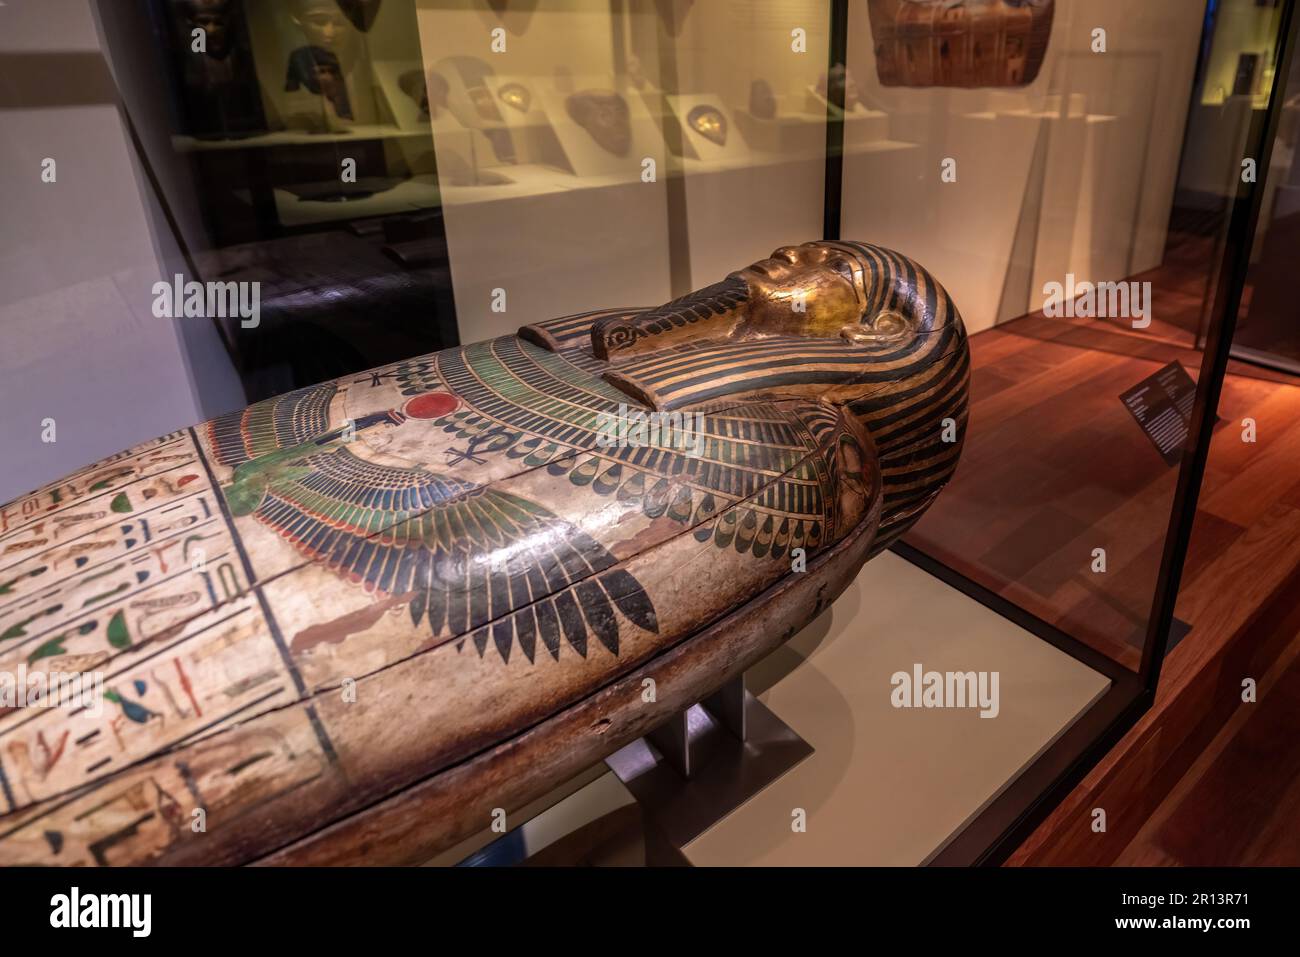 Cercueil de Taremetchenbastet - sarcophage égyptien antique au Musée archéologique national - Madrid, Espagne Banque D'Images